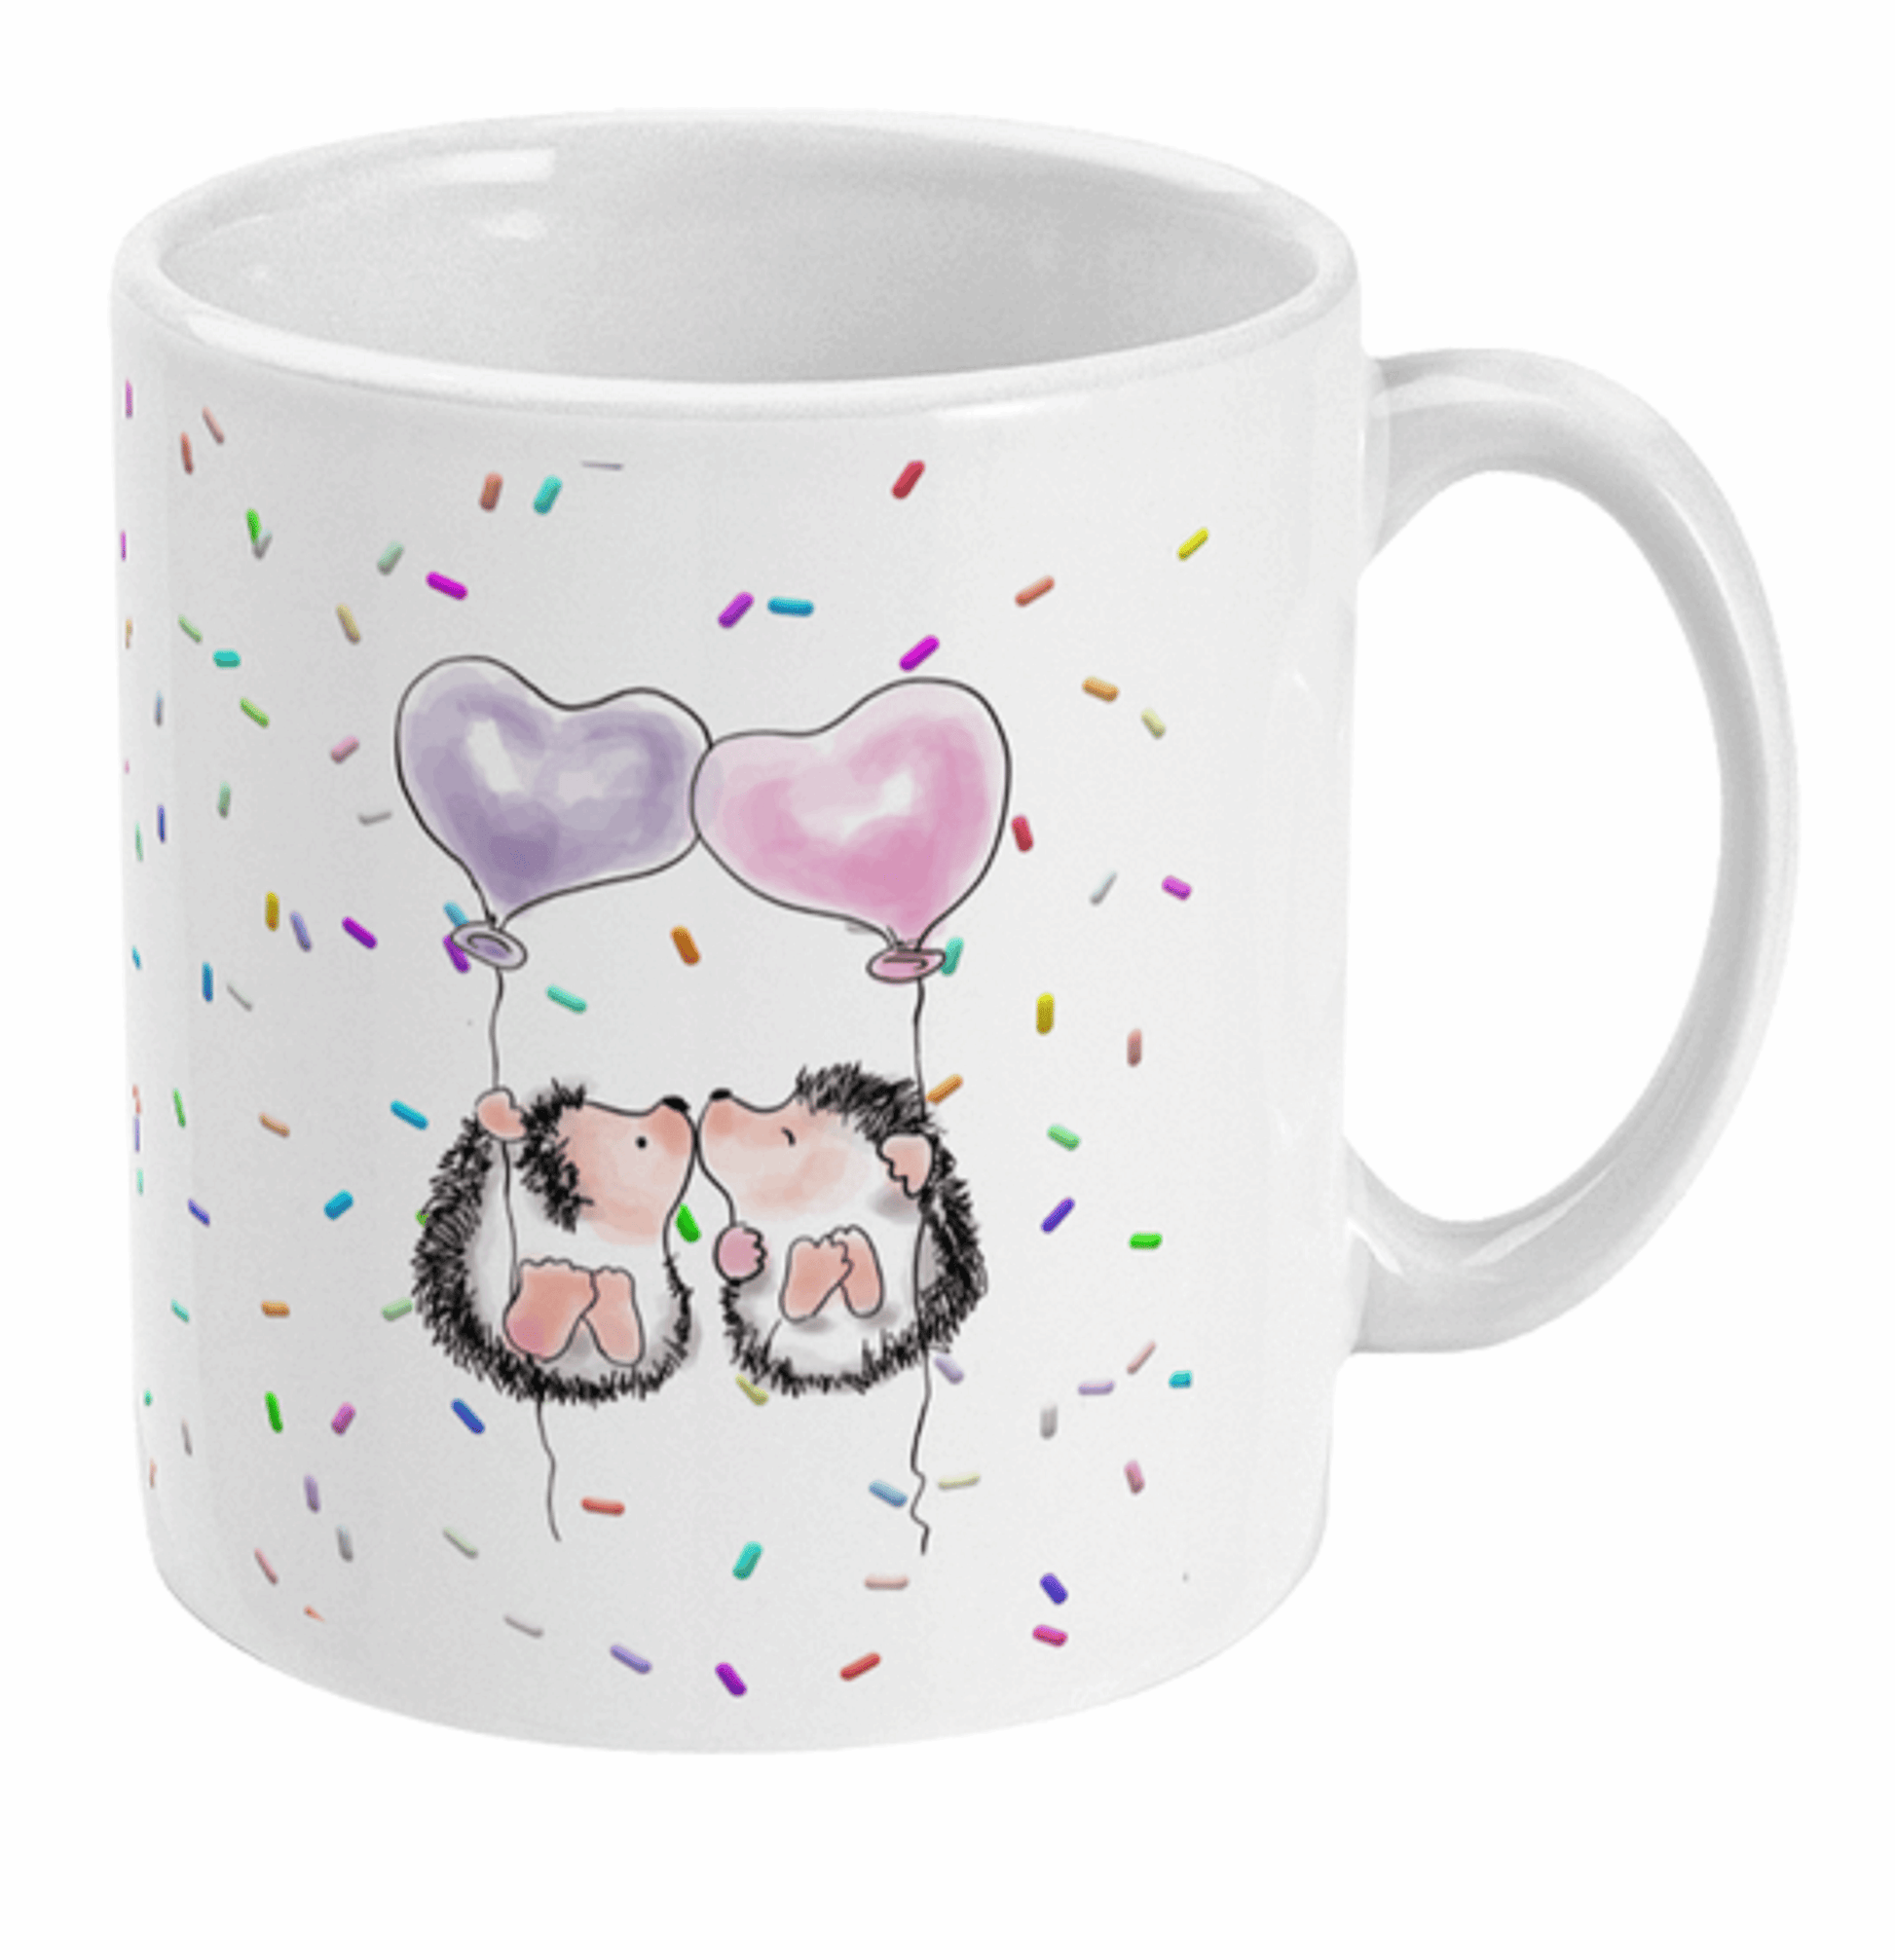  Cute Kissing Hedgehogs Coffee Mug by Free Spirit Accessories sold by Free Spirit Accessories